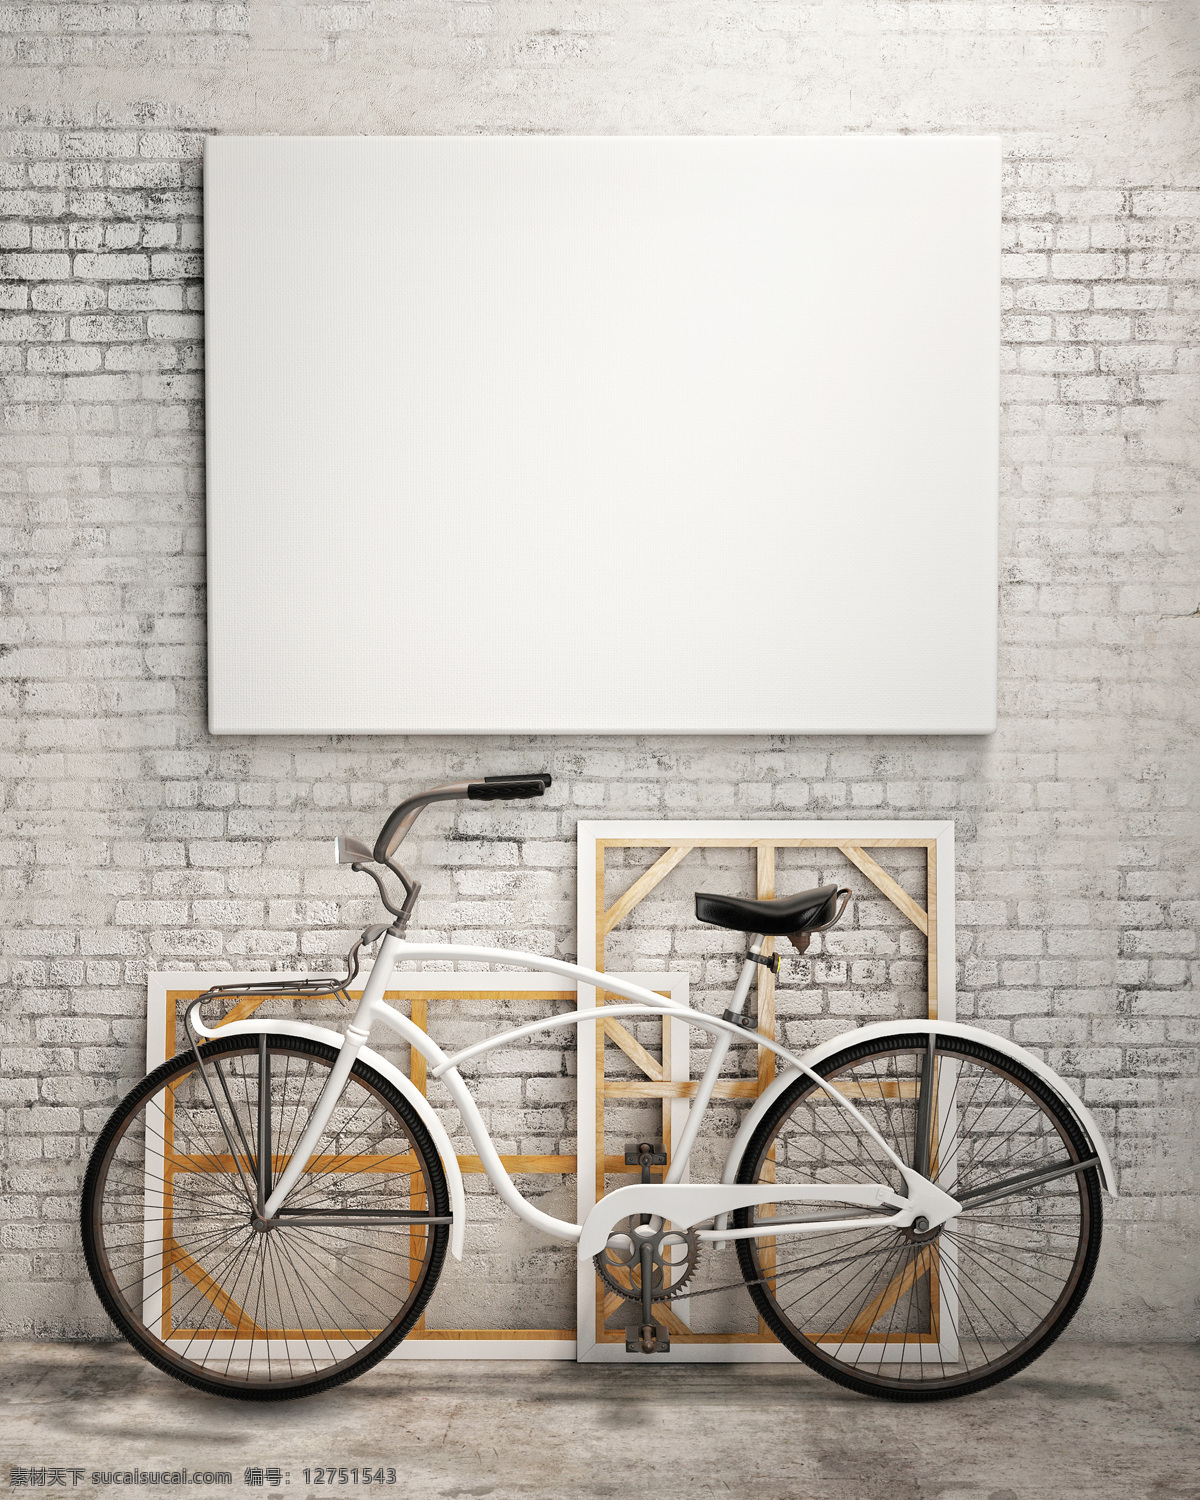 自行车 空白 壁画 墙壁 砖墙 挂画 装饰画背景 室内摄影 其他类别 生活百科 白色